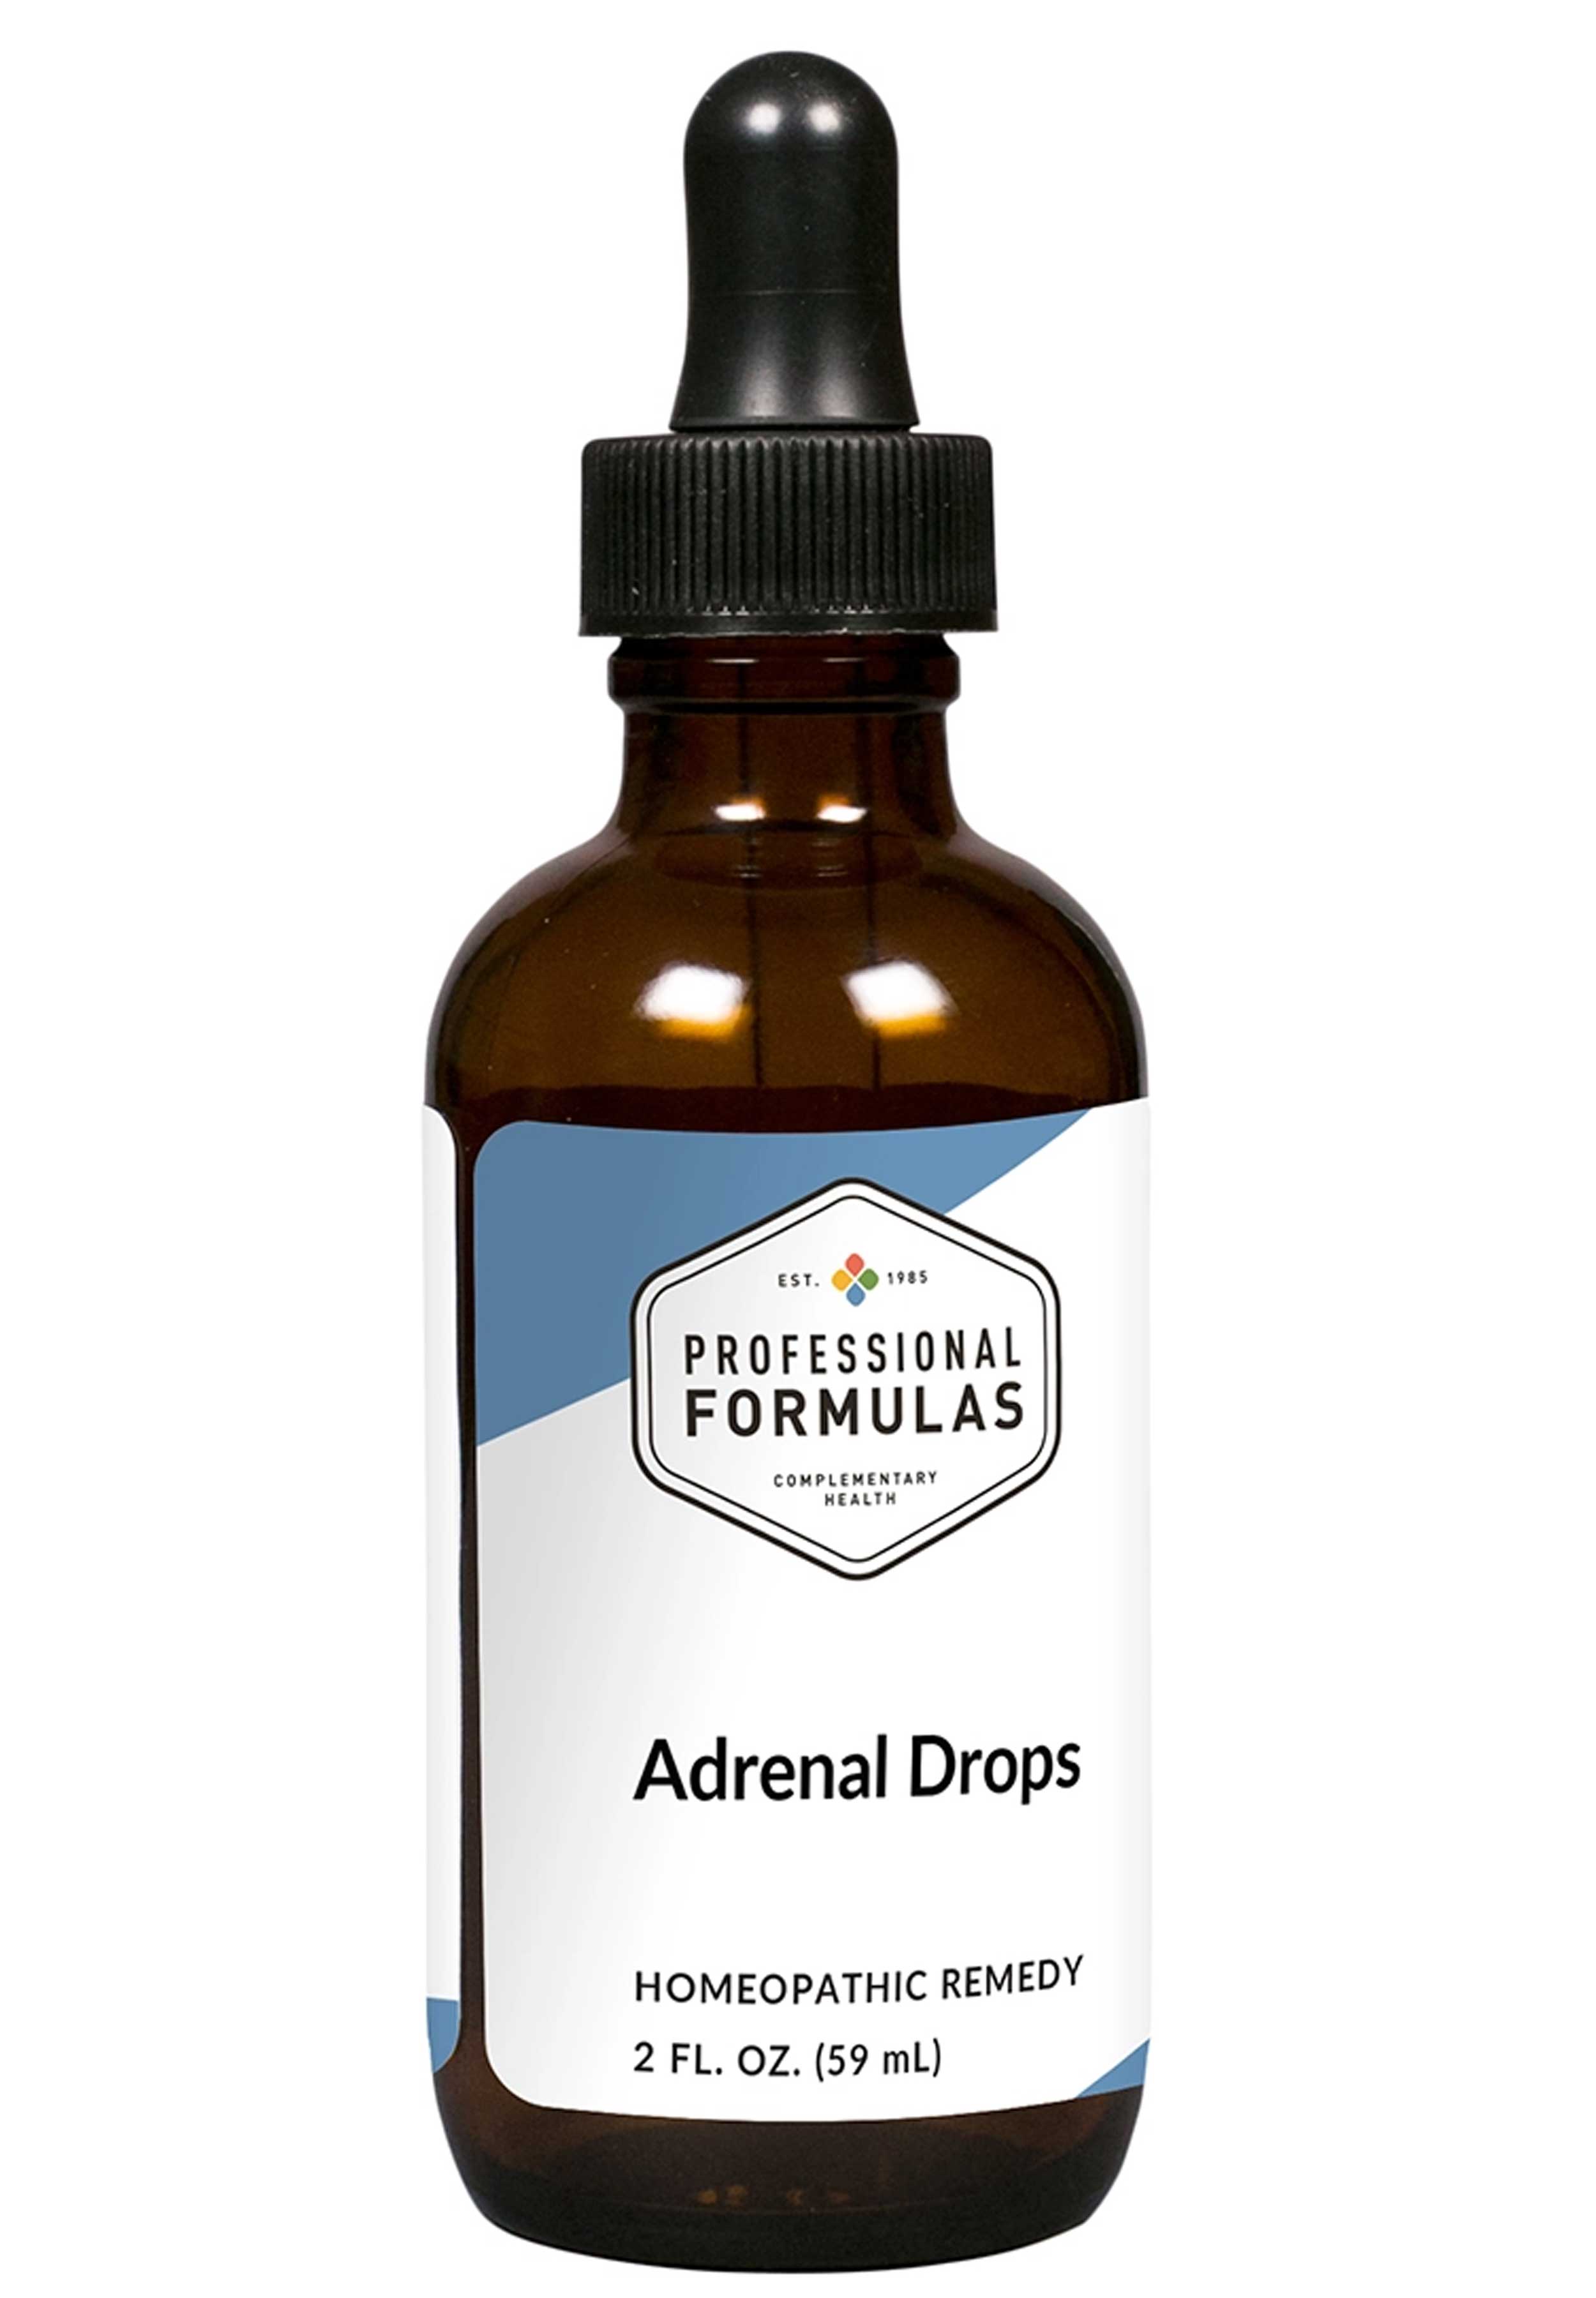 Professional Formulas Adrenal Drops